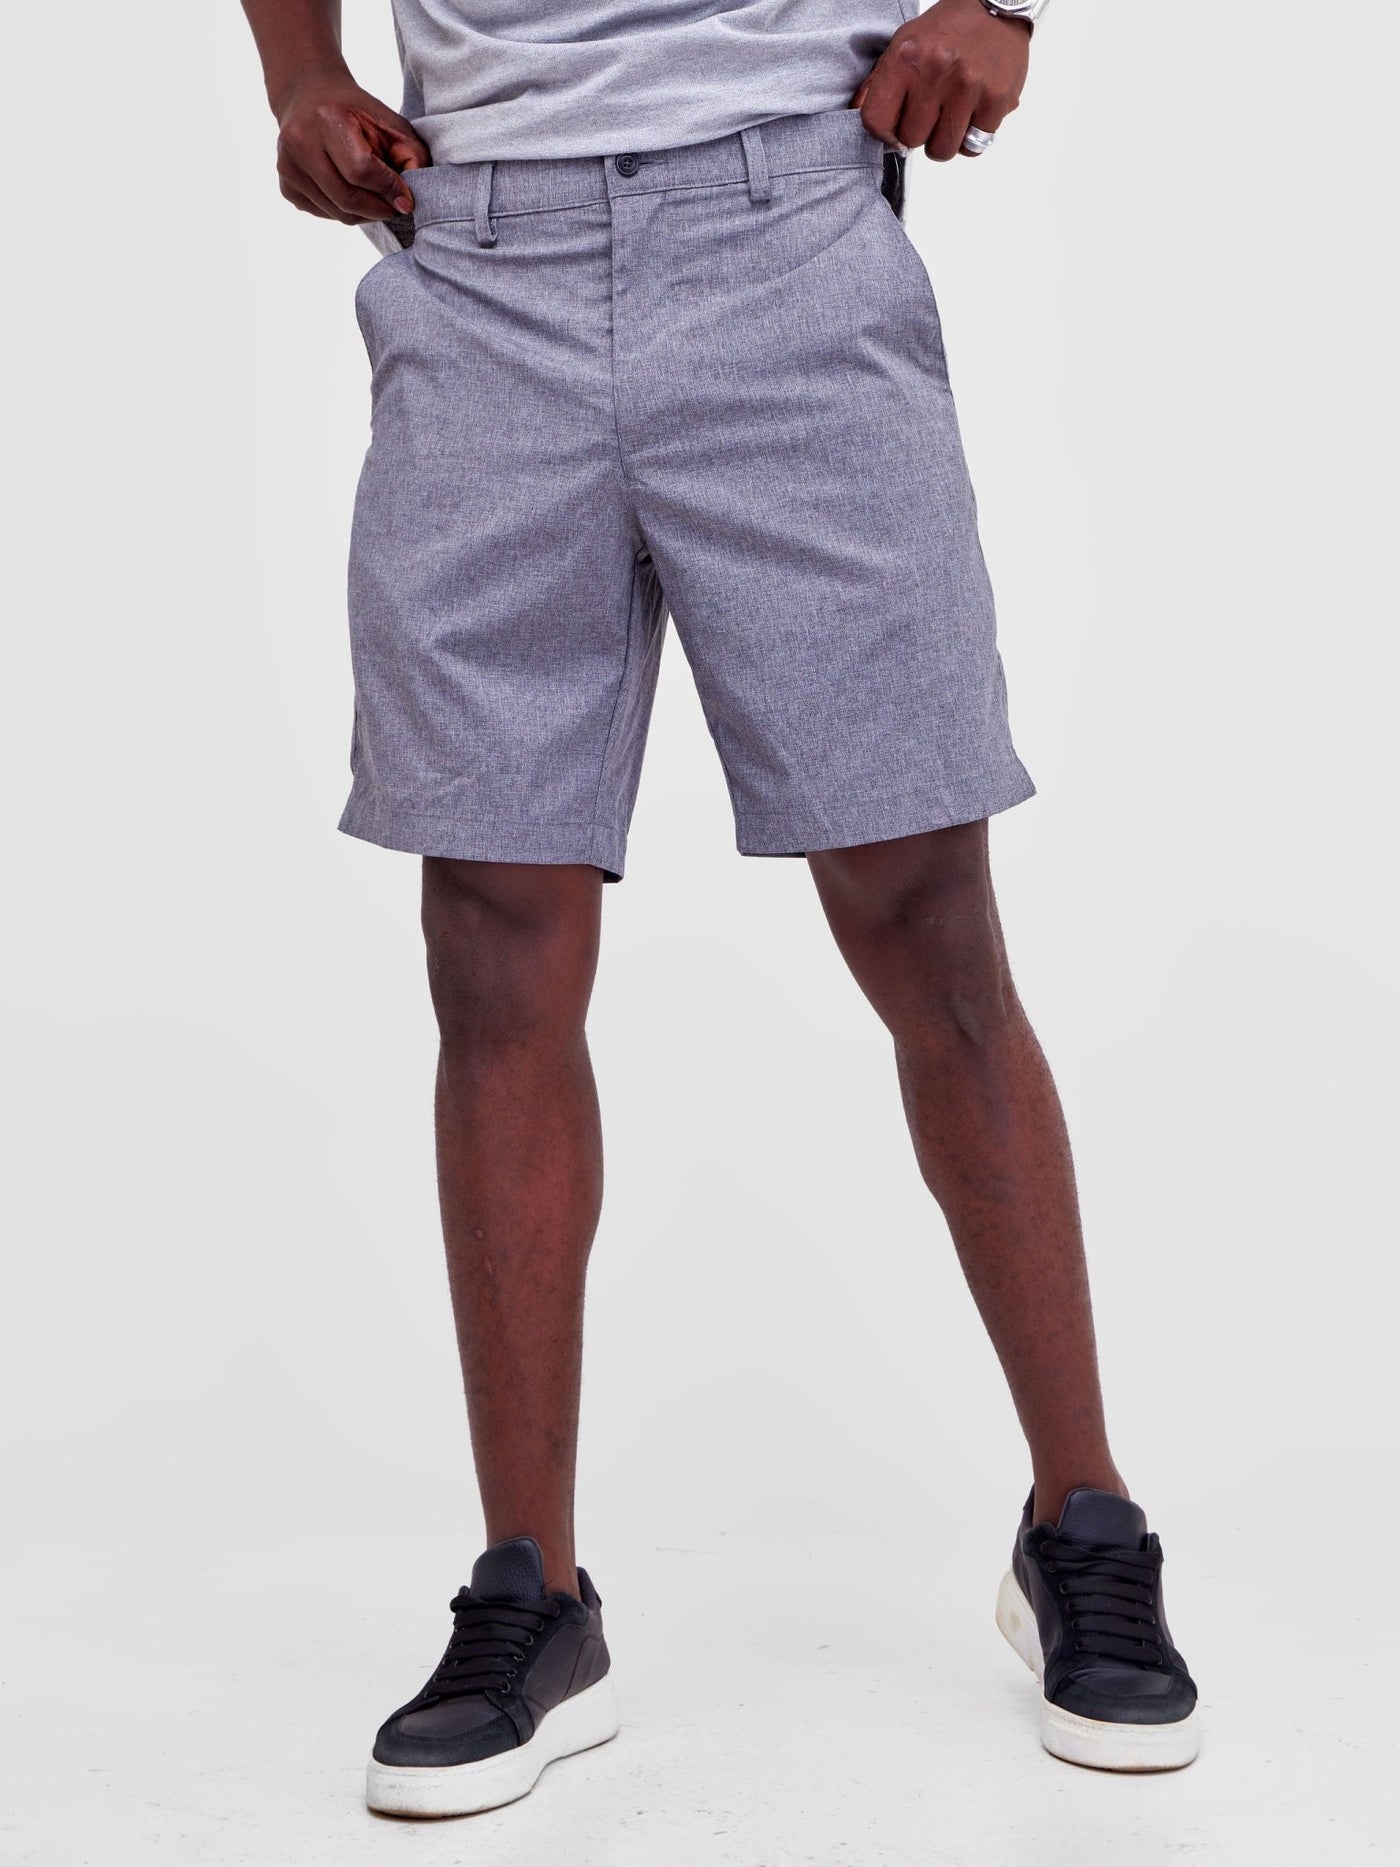 Alladin Per Men's Shorts - Grey - Shopzetu